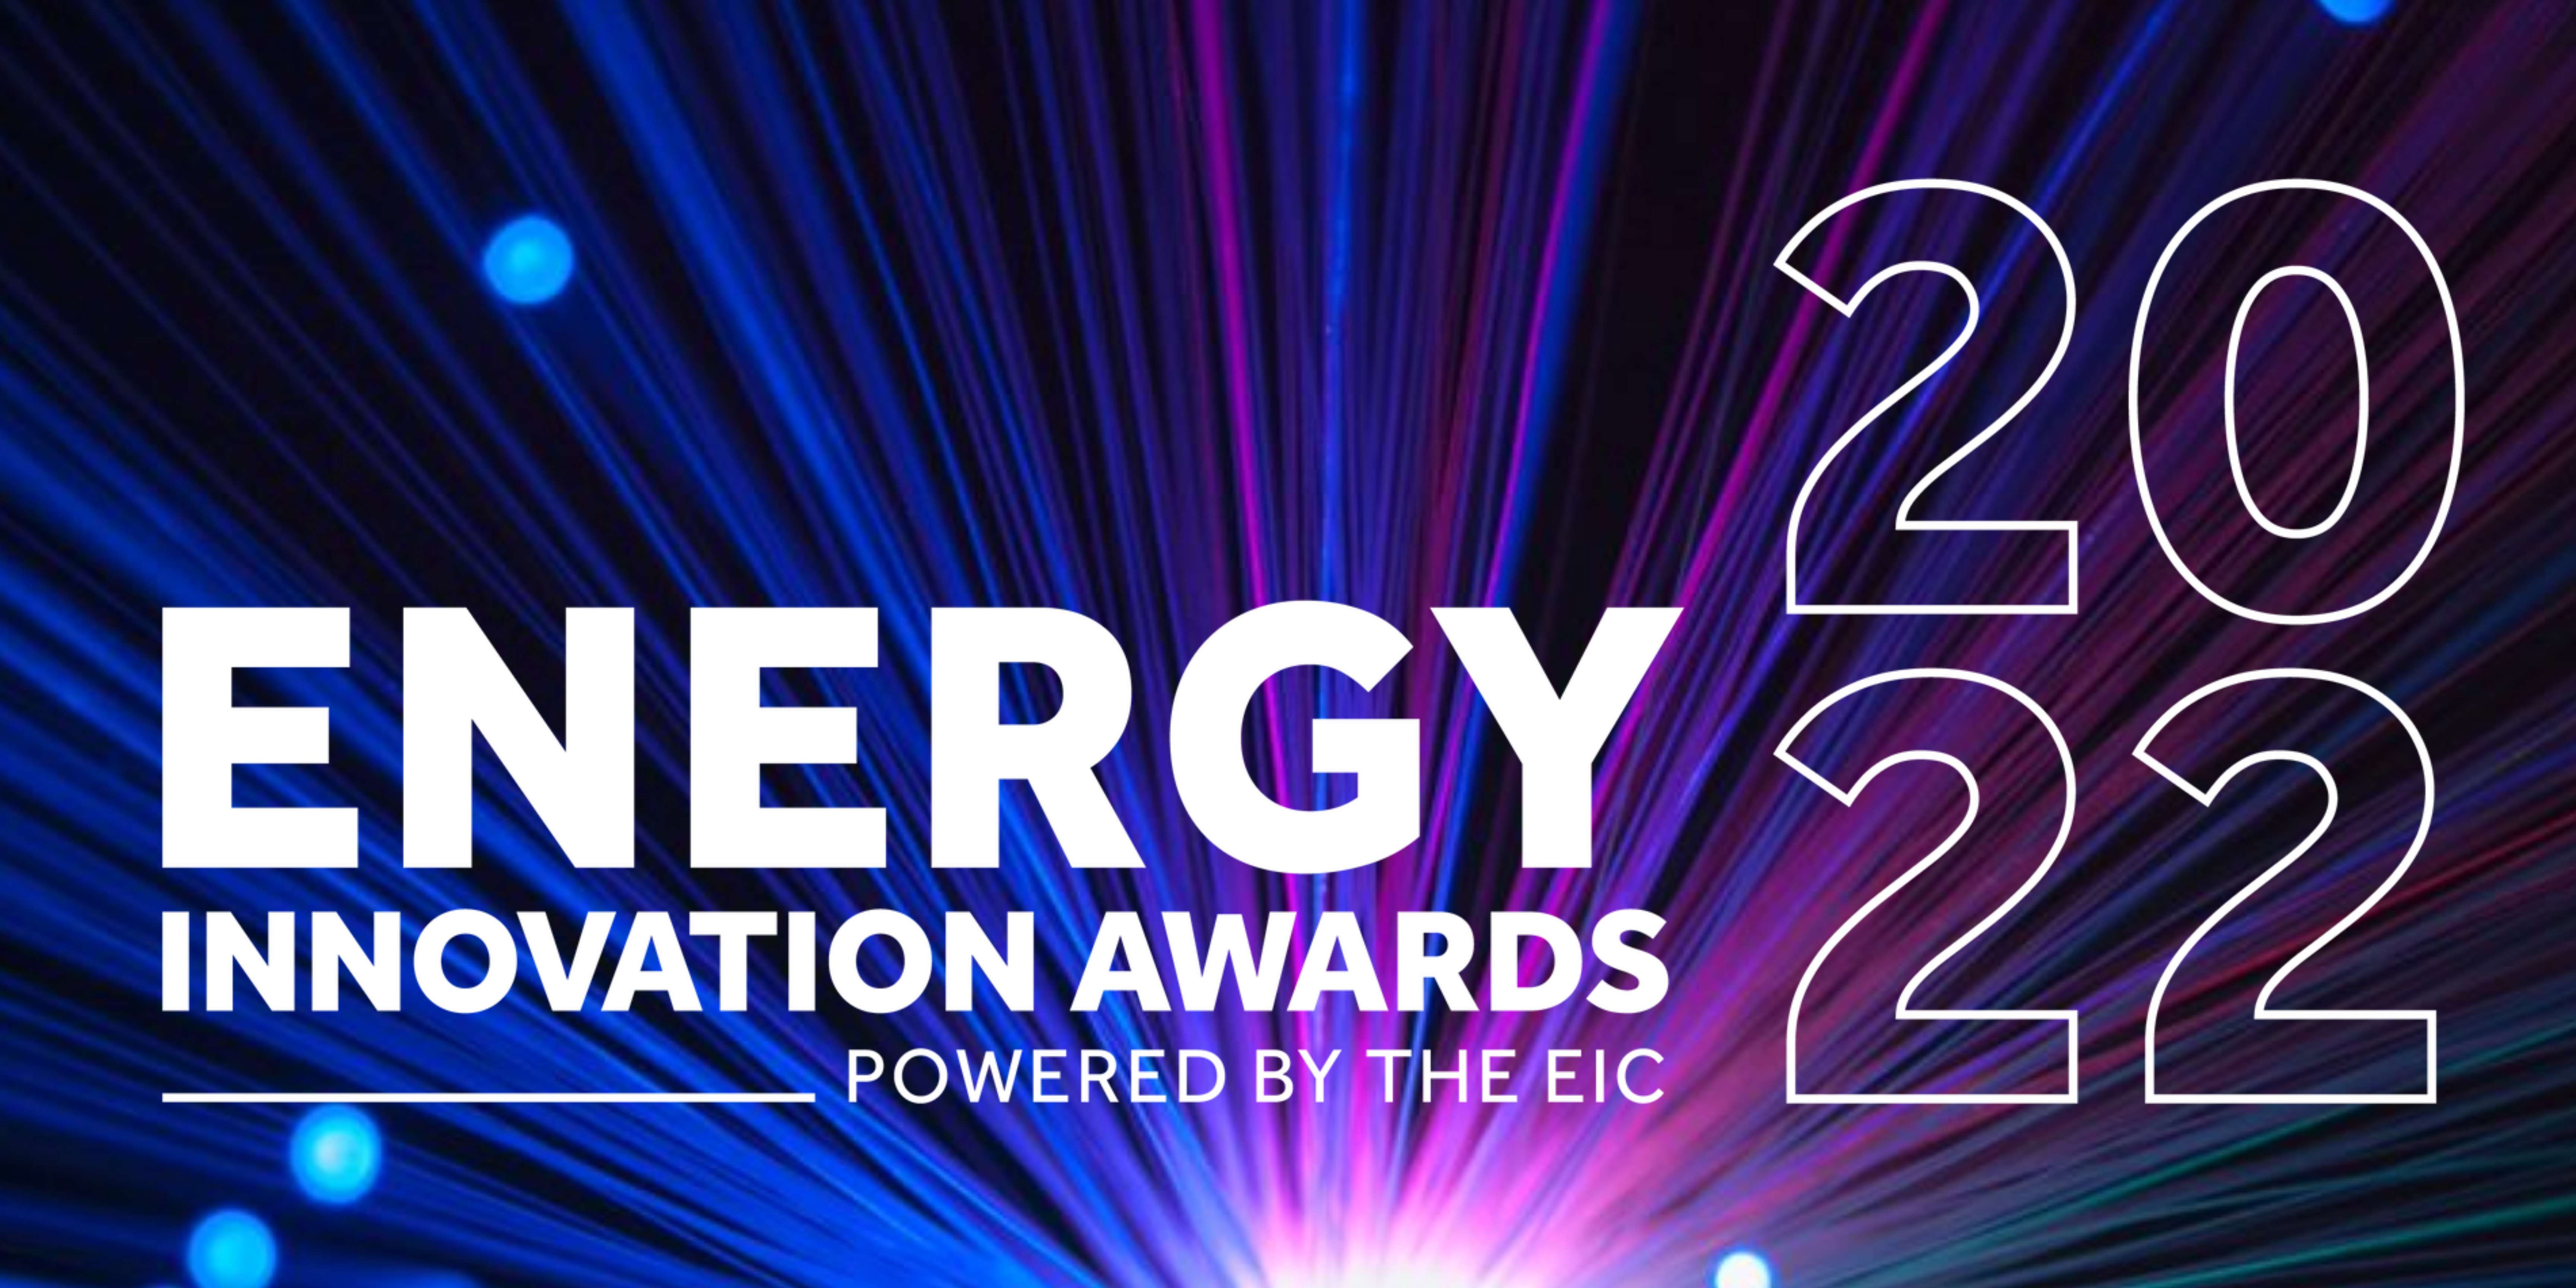 Energy Innovation Awards 2022 shortlist announced